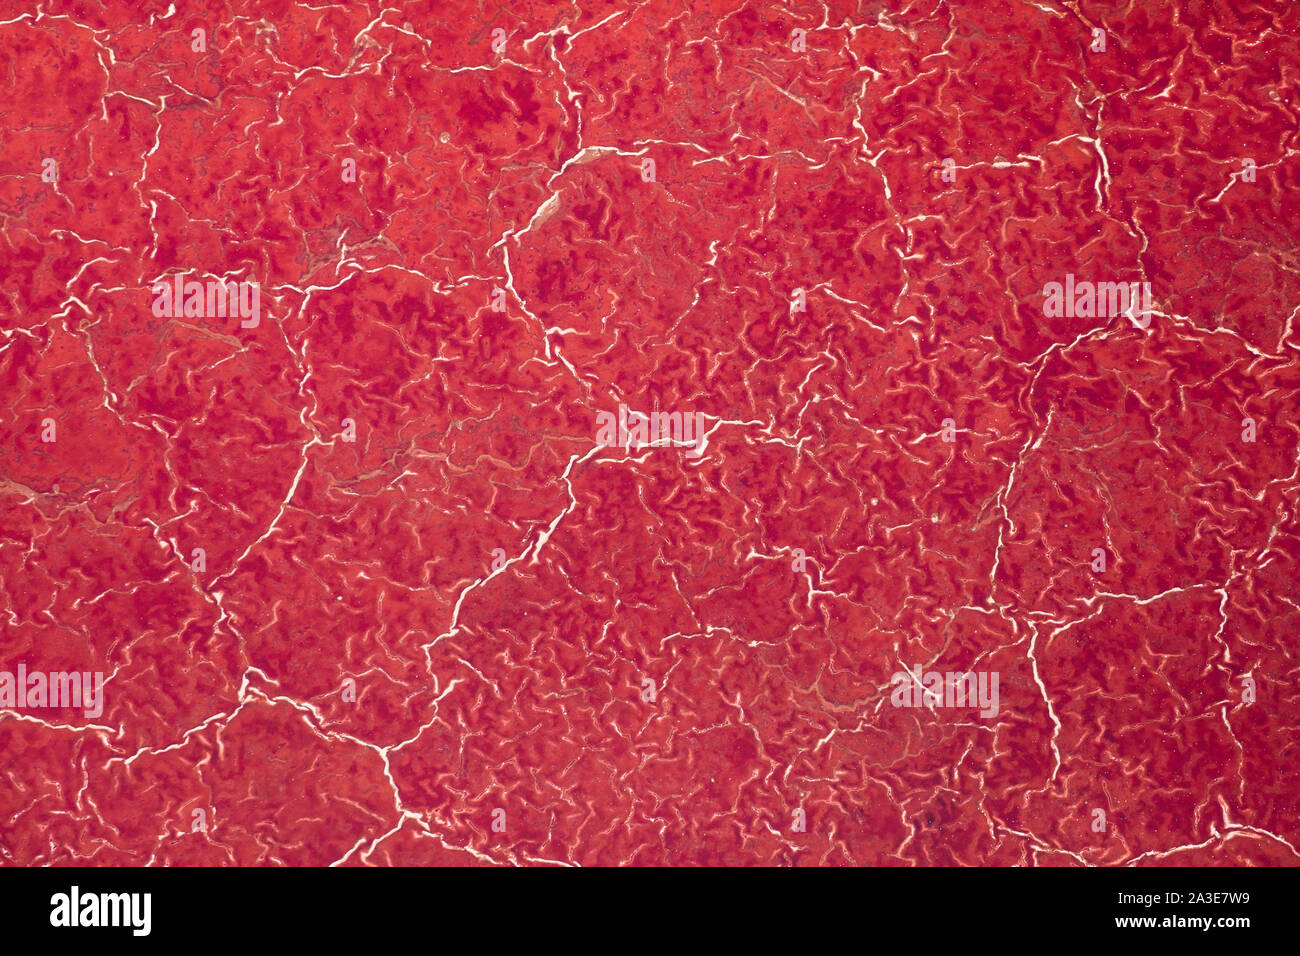 Afrika, Tansania, Luftbild der Muster der roten Algen und Salz Formationen im flachen Salz Wasser des Lake Natron Stockfoto